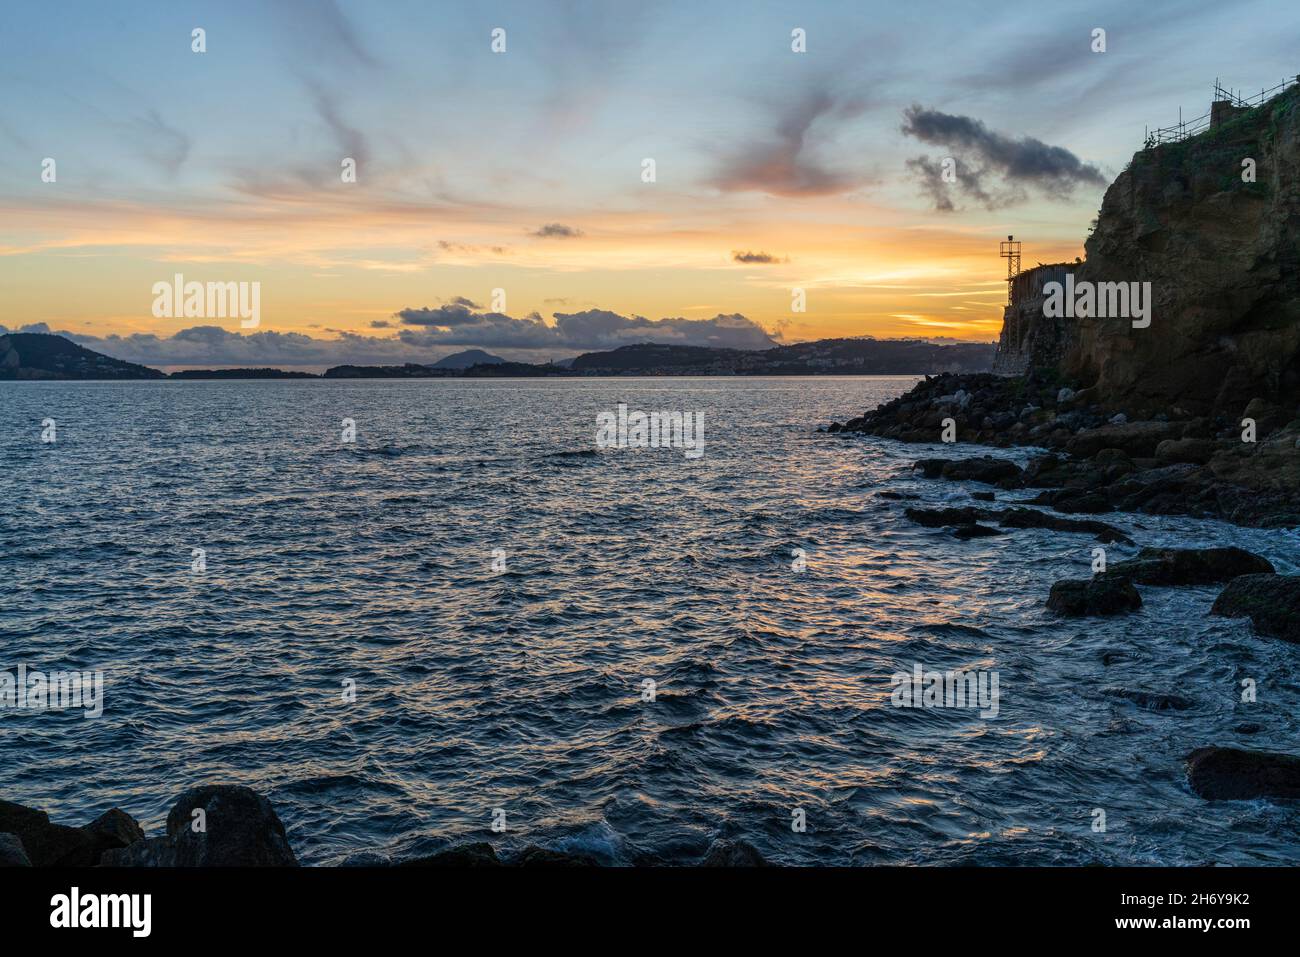 Pozzuoli (Napoli) - Panorama sul mare dal lungomare Pertini, via Napoli Stock Photo